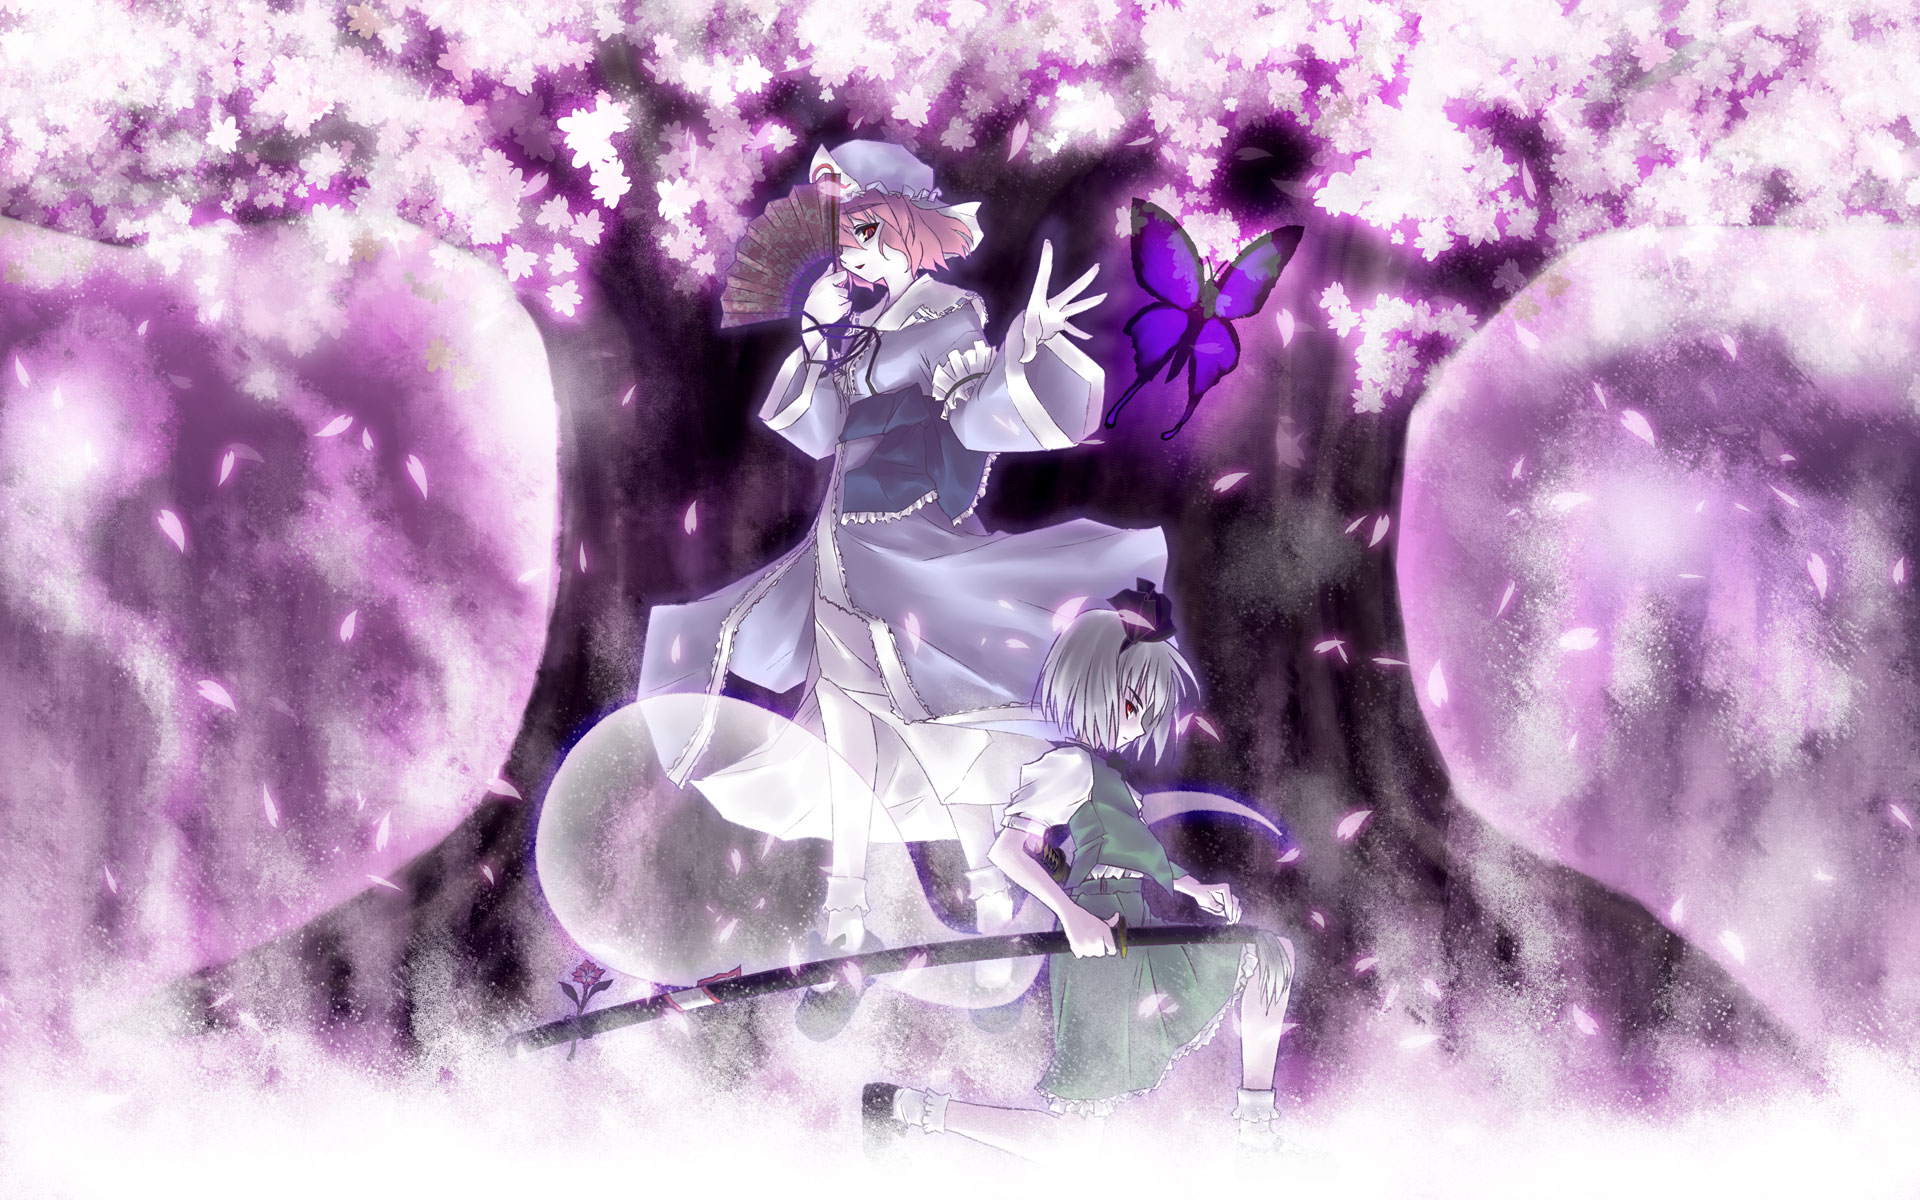 Vibrant purple butterfly with Yuyuko Saigyouji, Youmu Konpaku, and Myon (Touhou) characters.